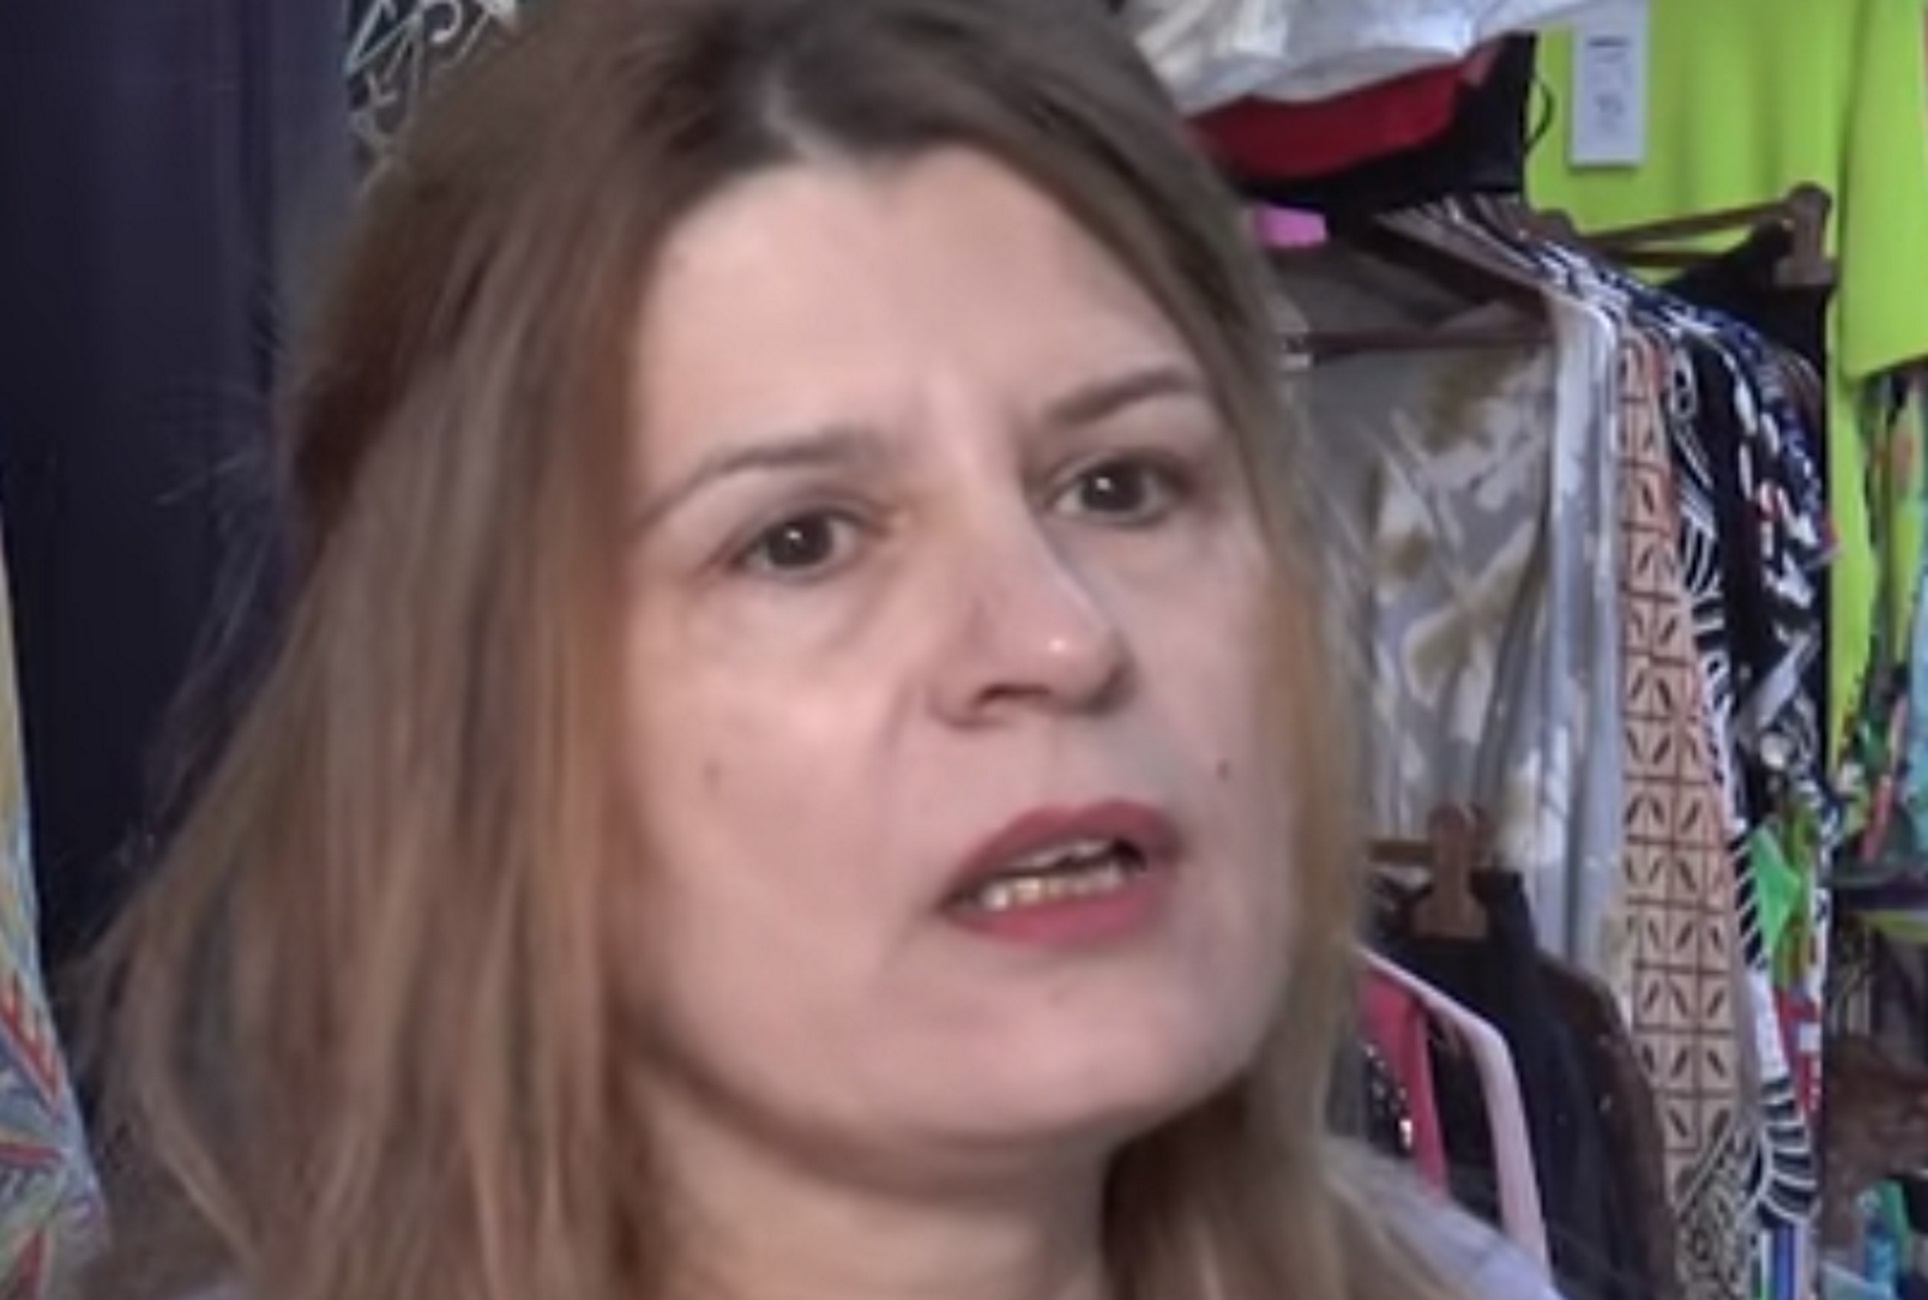 Τηλεφωνική απάτη στις Σέρρες: Τι λέει η κόρη της γυναίκας που έζησε στιγμές τρόμου μετά από τηλεφώνημα